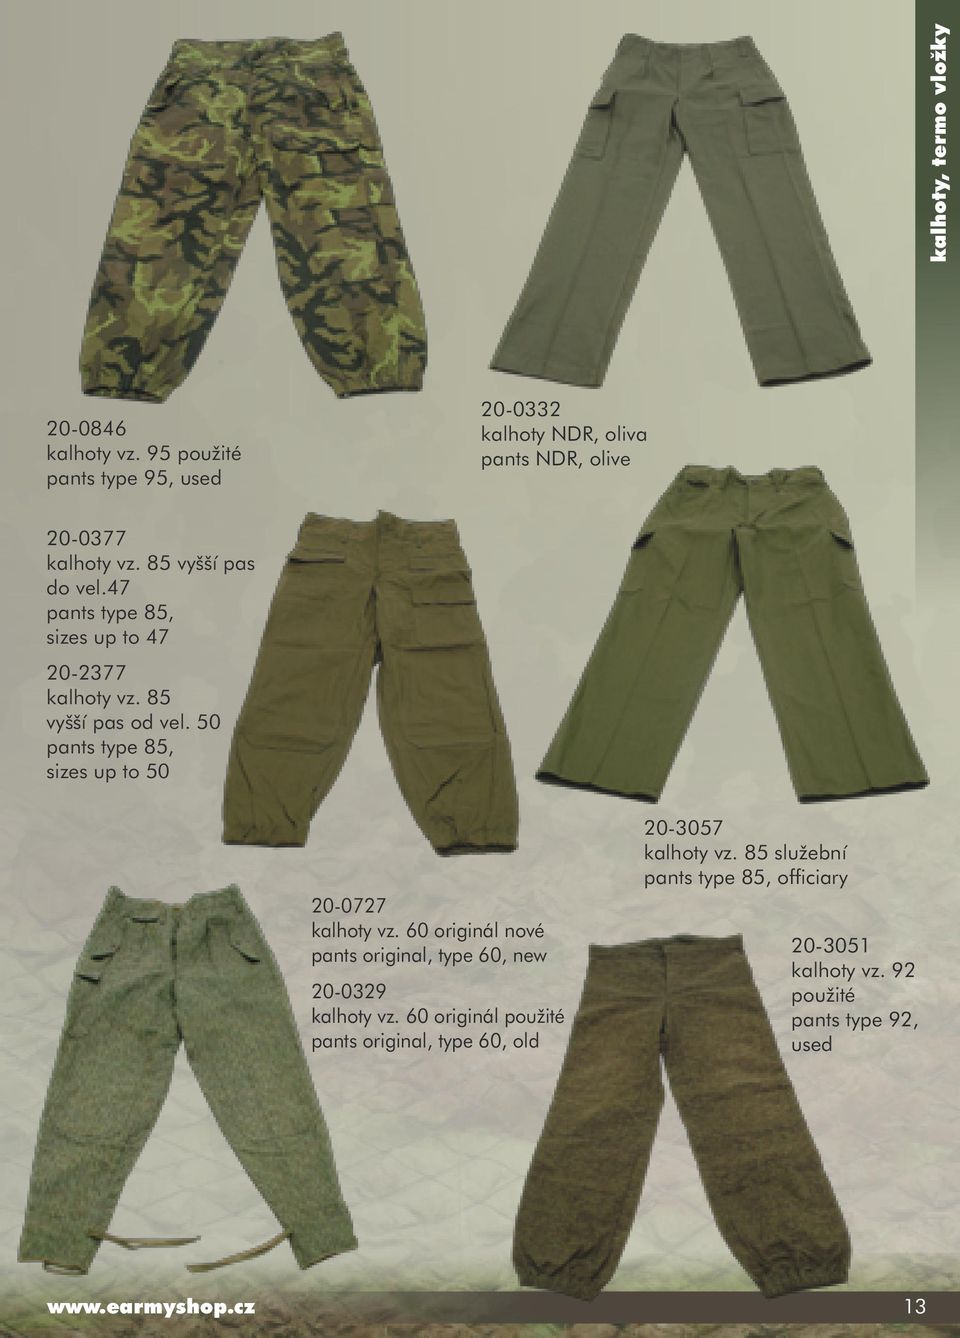 47 pants type 85, sizes up to 47 20-2377 kalhoty vz. 85 vyšší pas od vel. 50 pants type 85, sizes up to 50 20-0727 kalhoty vz.